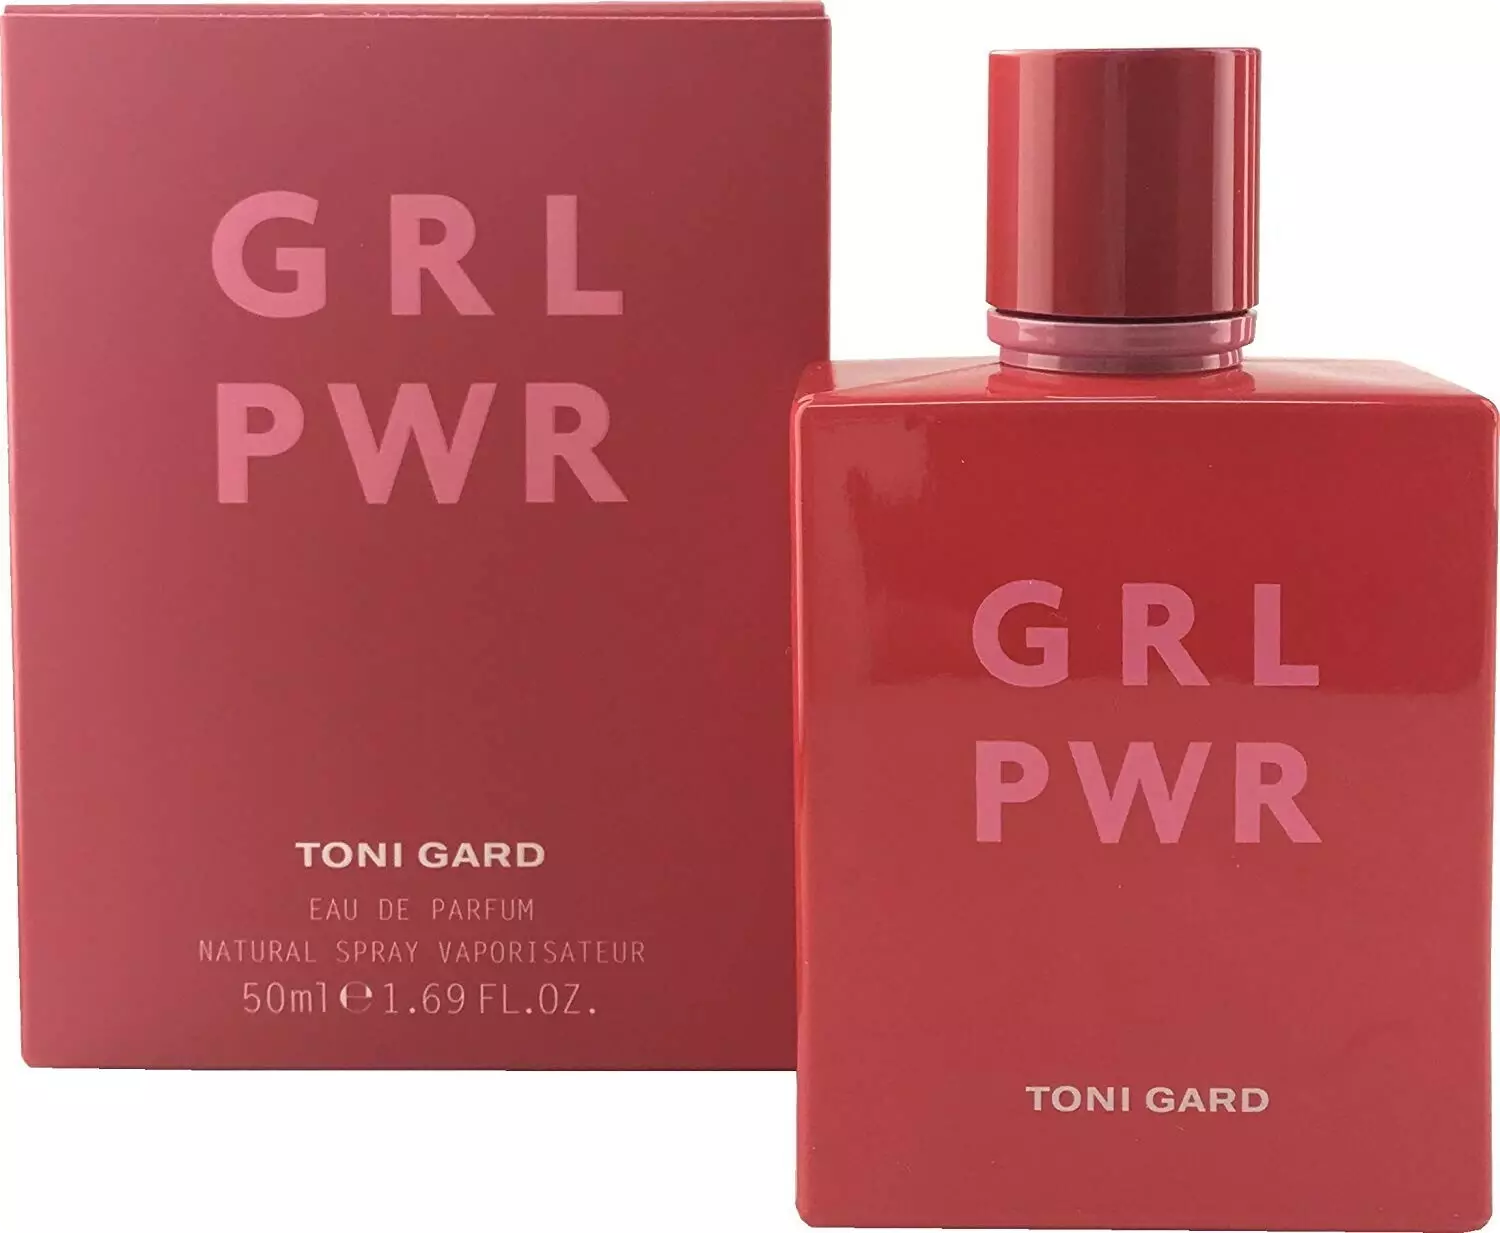 Купить духи Toni Gard Grl и Эл Эр цена в — женская описание В аромата Эр Джи Pwr Гард парфюм Пи интернет-магазине туалетная и Тони вода —